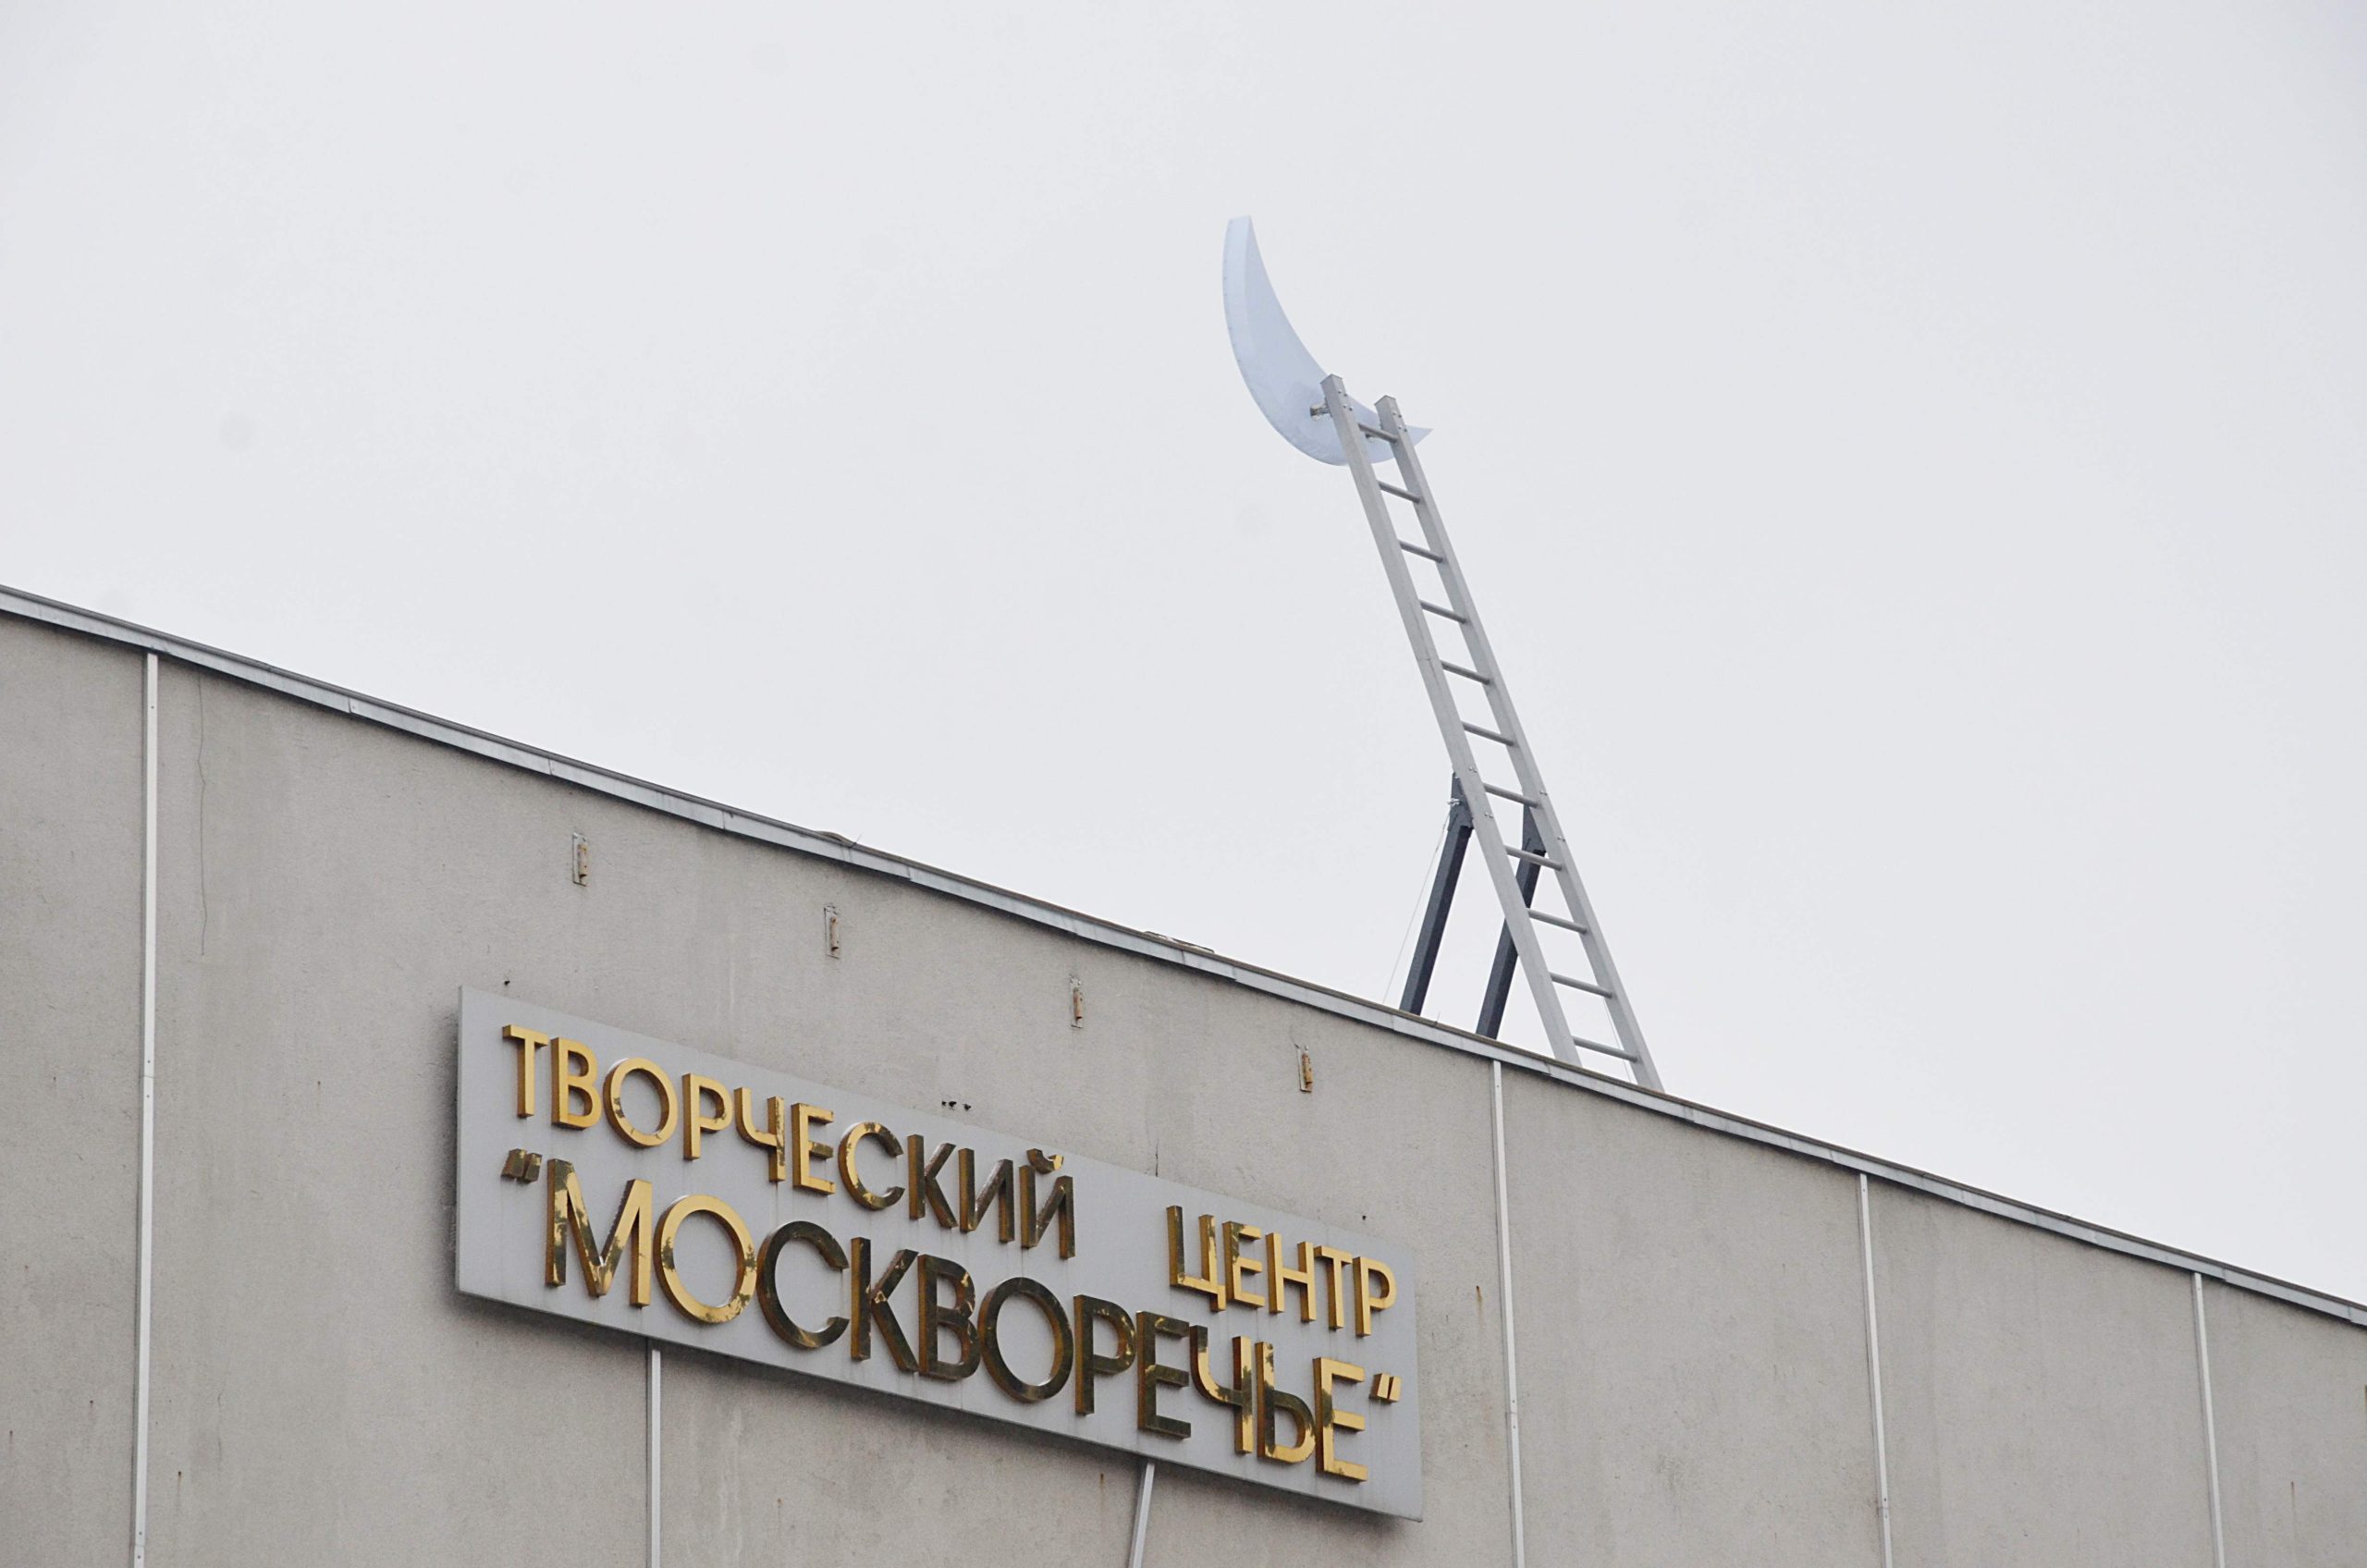 Экскурсия «Театр наизнанку» пройдет в КЦ «Москворечье»